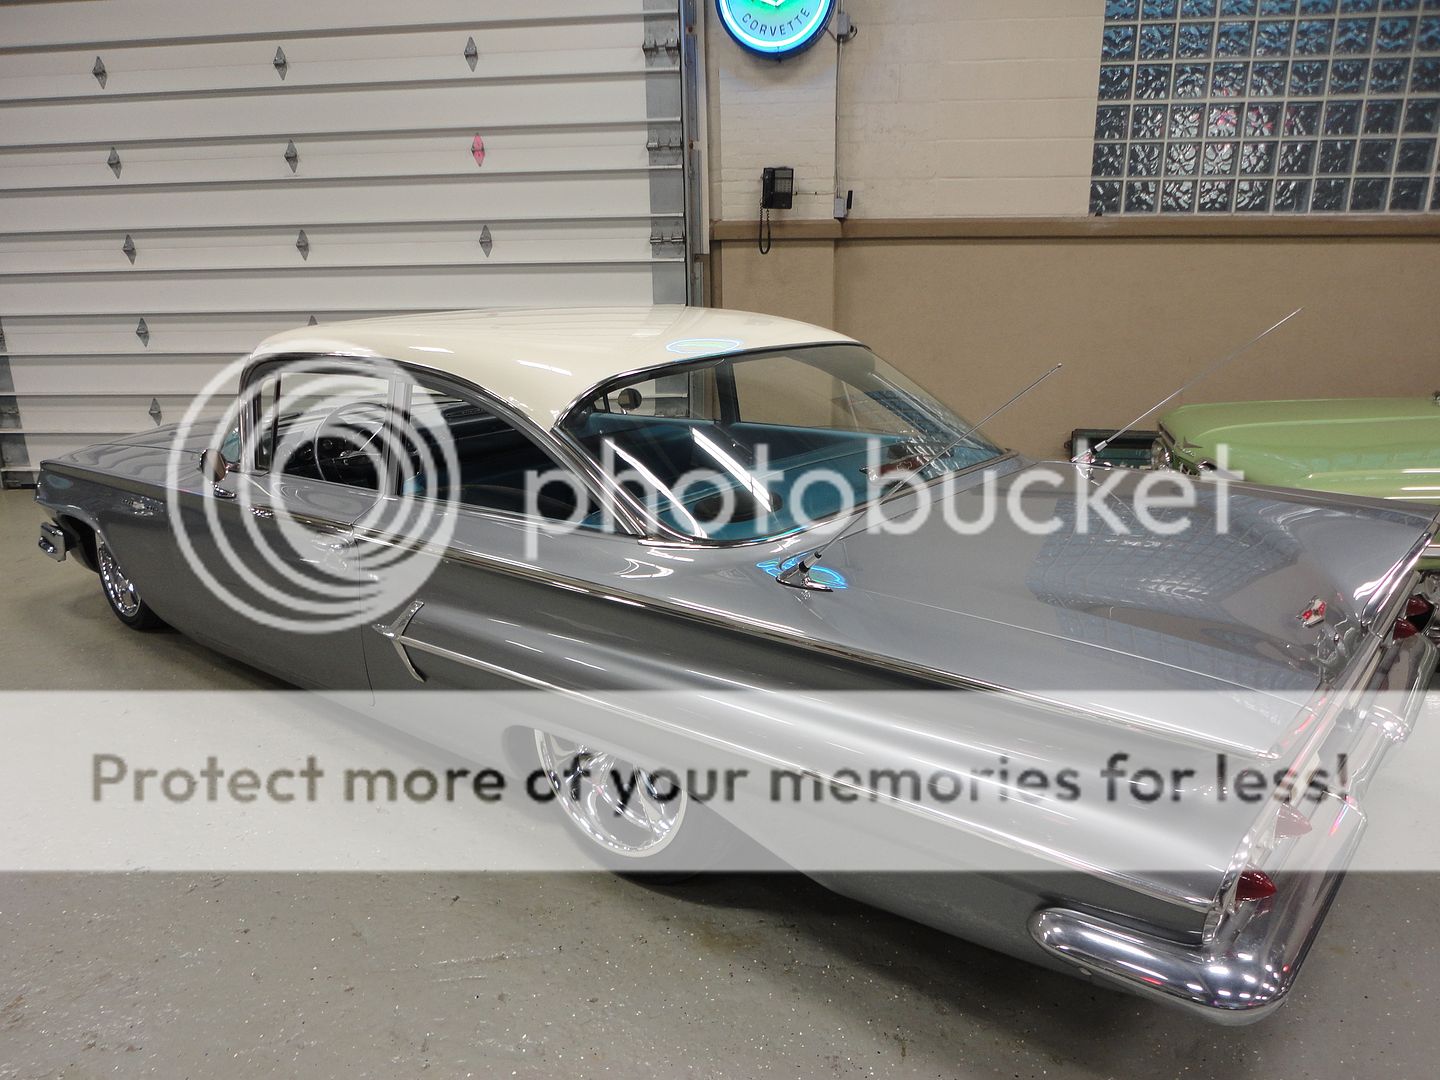 1960 Bel Air Grandma Car 350 350 Air Ride Corvette Disc Brakes Hot Rod Bagged